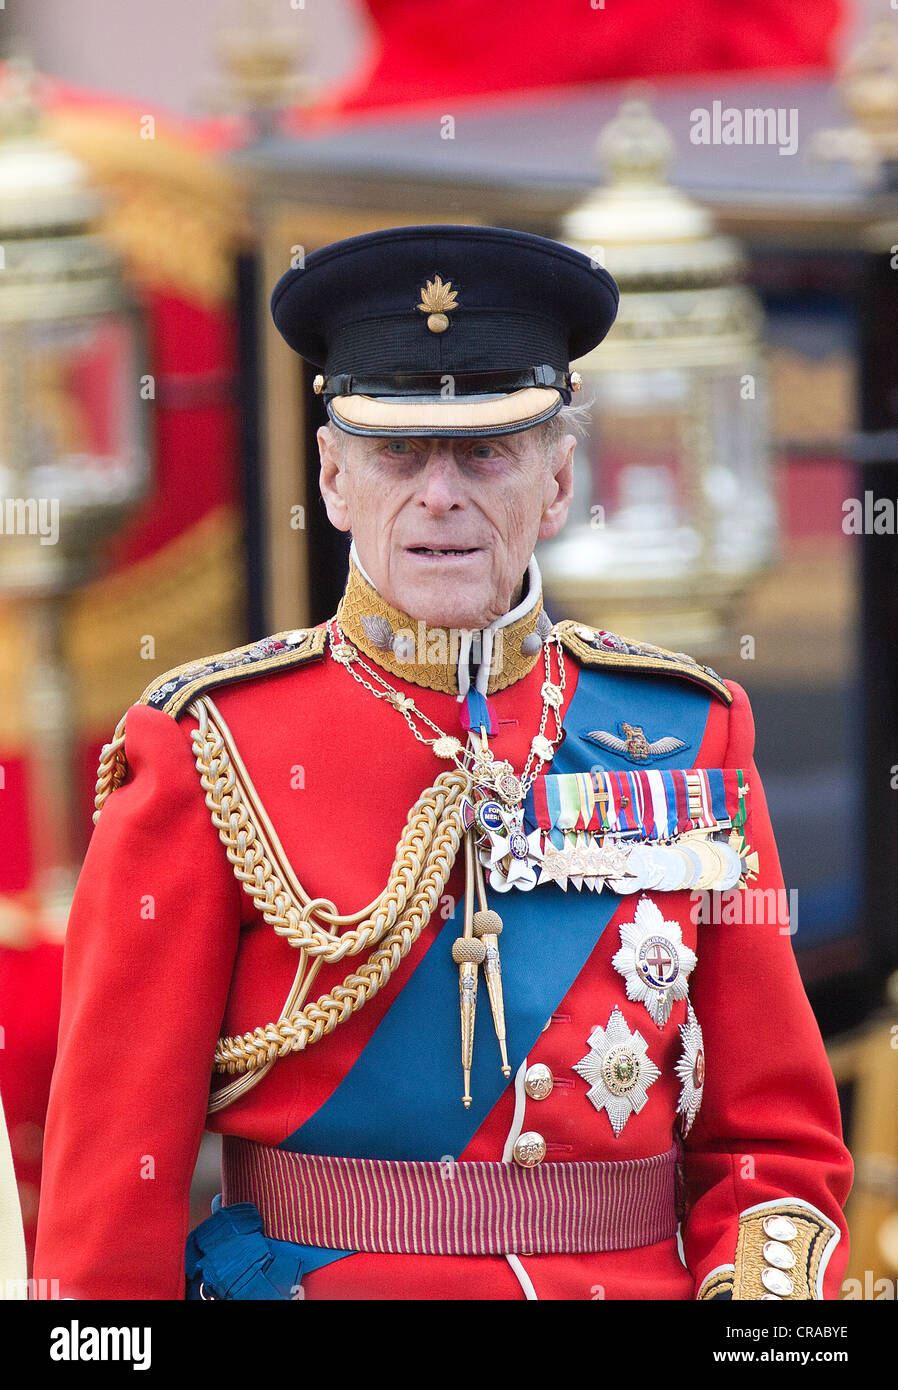 El príncipe Felipe de Gran Bretaña Trooping asiste a la ceremonia de los colores para marcar su cumpleaños oficial en el Palacio de Buckingham. Foto de stock